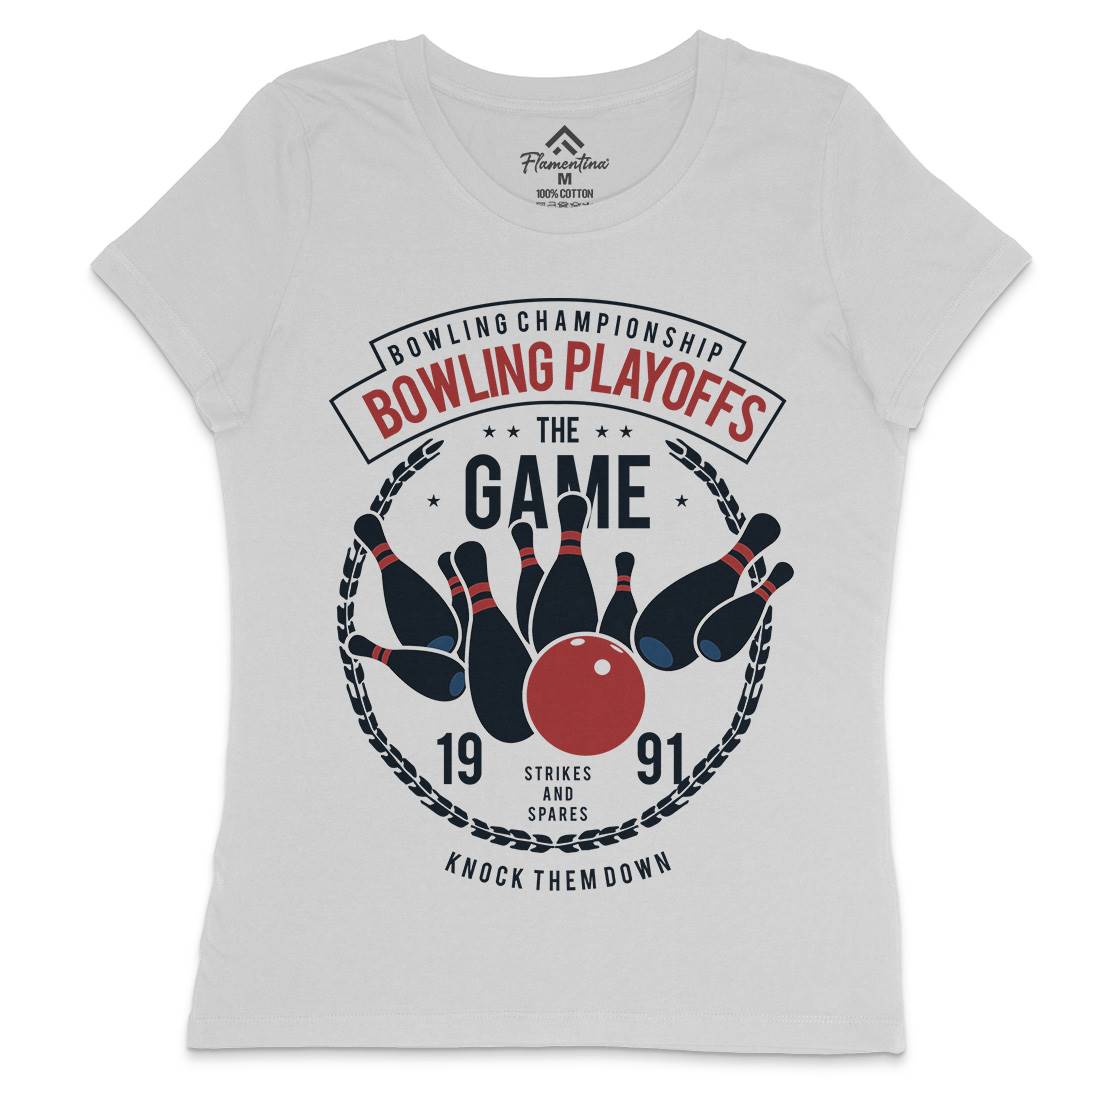 Bowling Playoffs Womens Crew Neck T-Shirt Sport B384